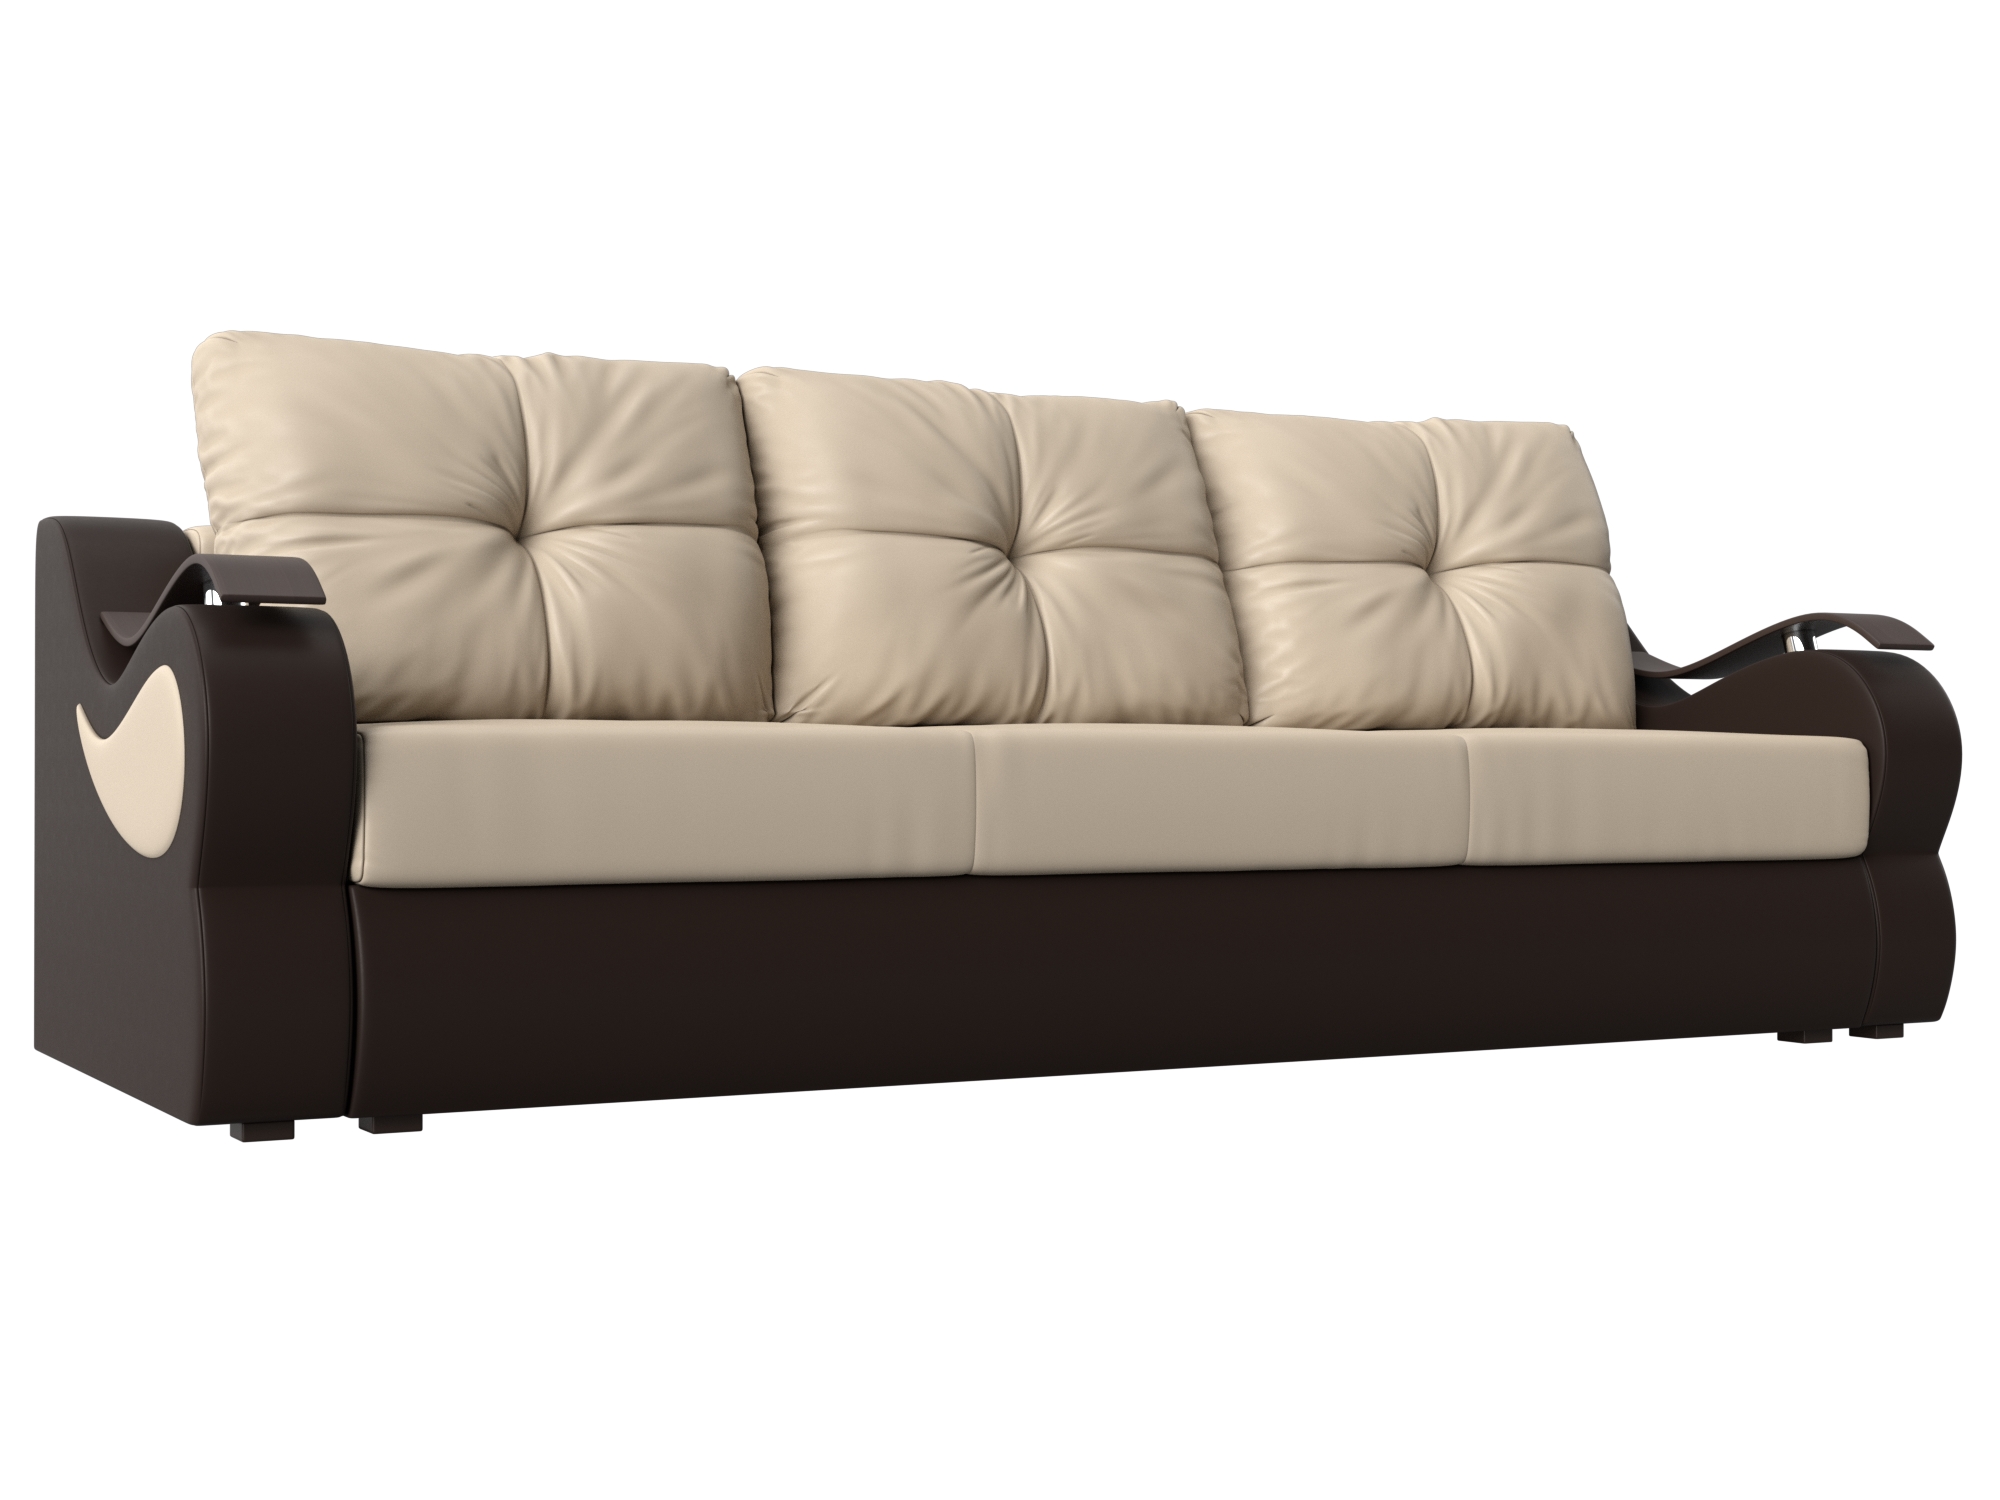 Прямой диван Меркурий еврокнижка (бежевый\коричневый)